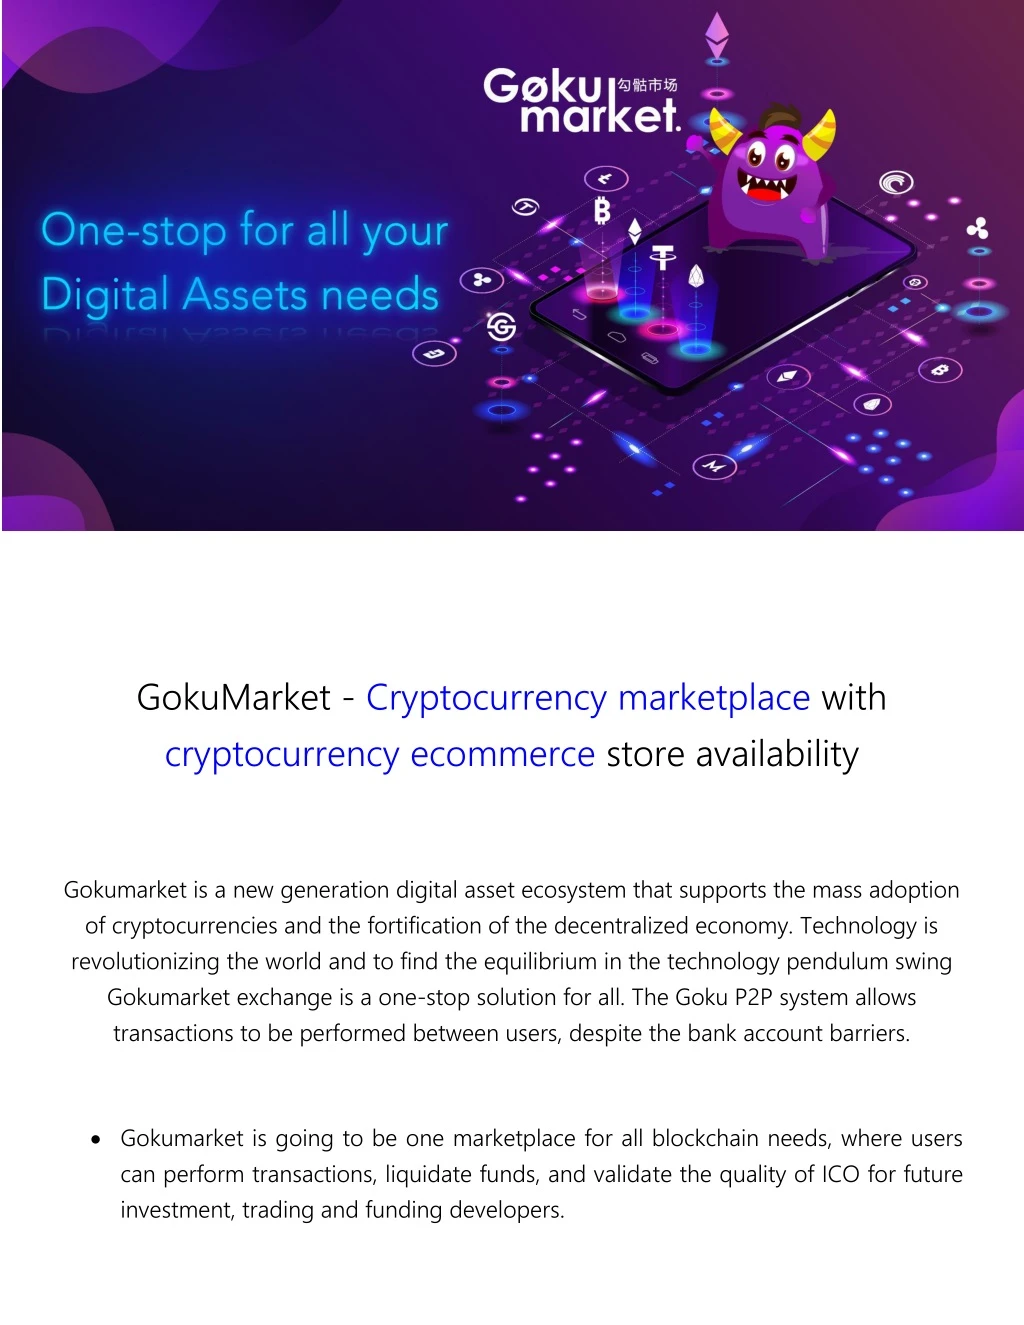 gokumarket cryptocurrency marketplace with